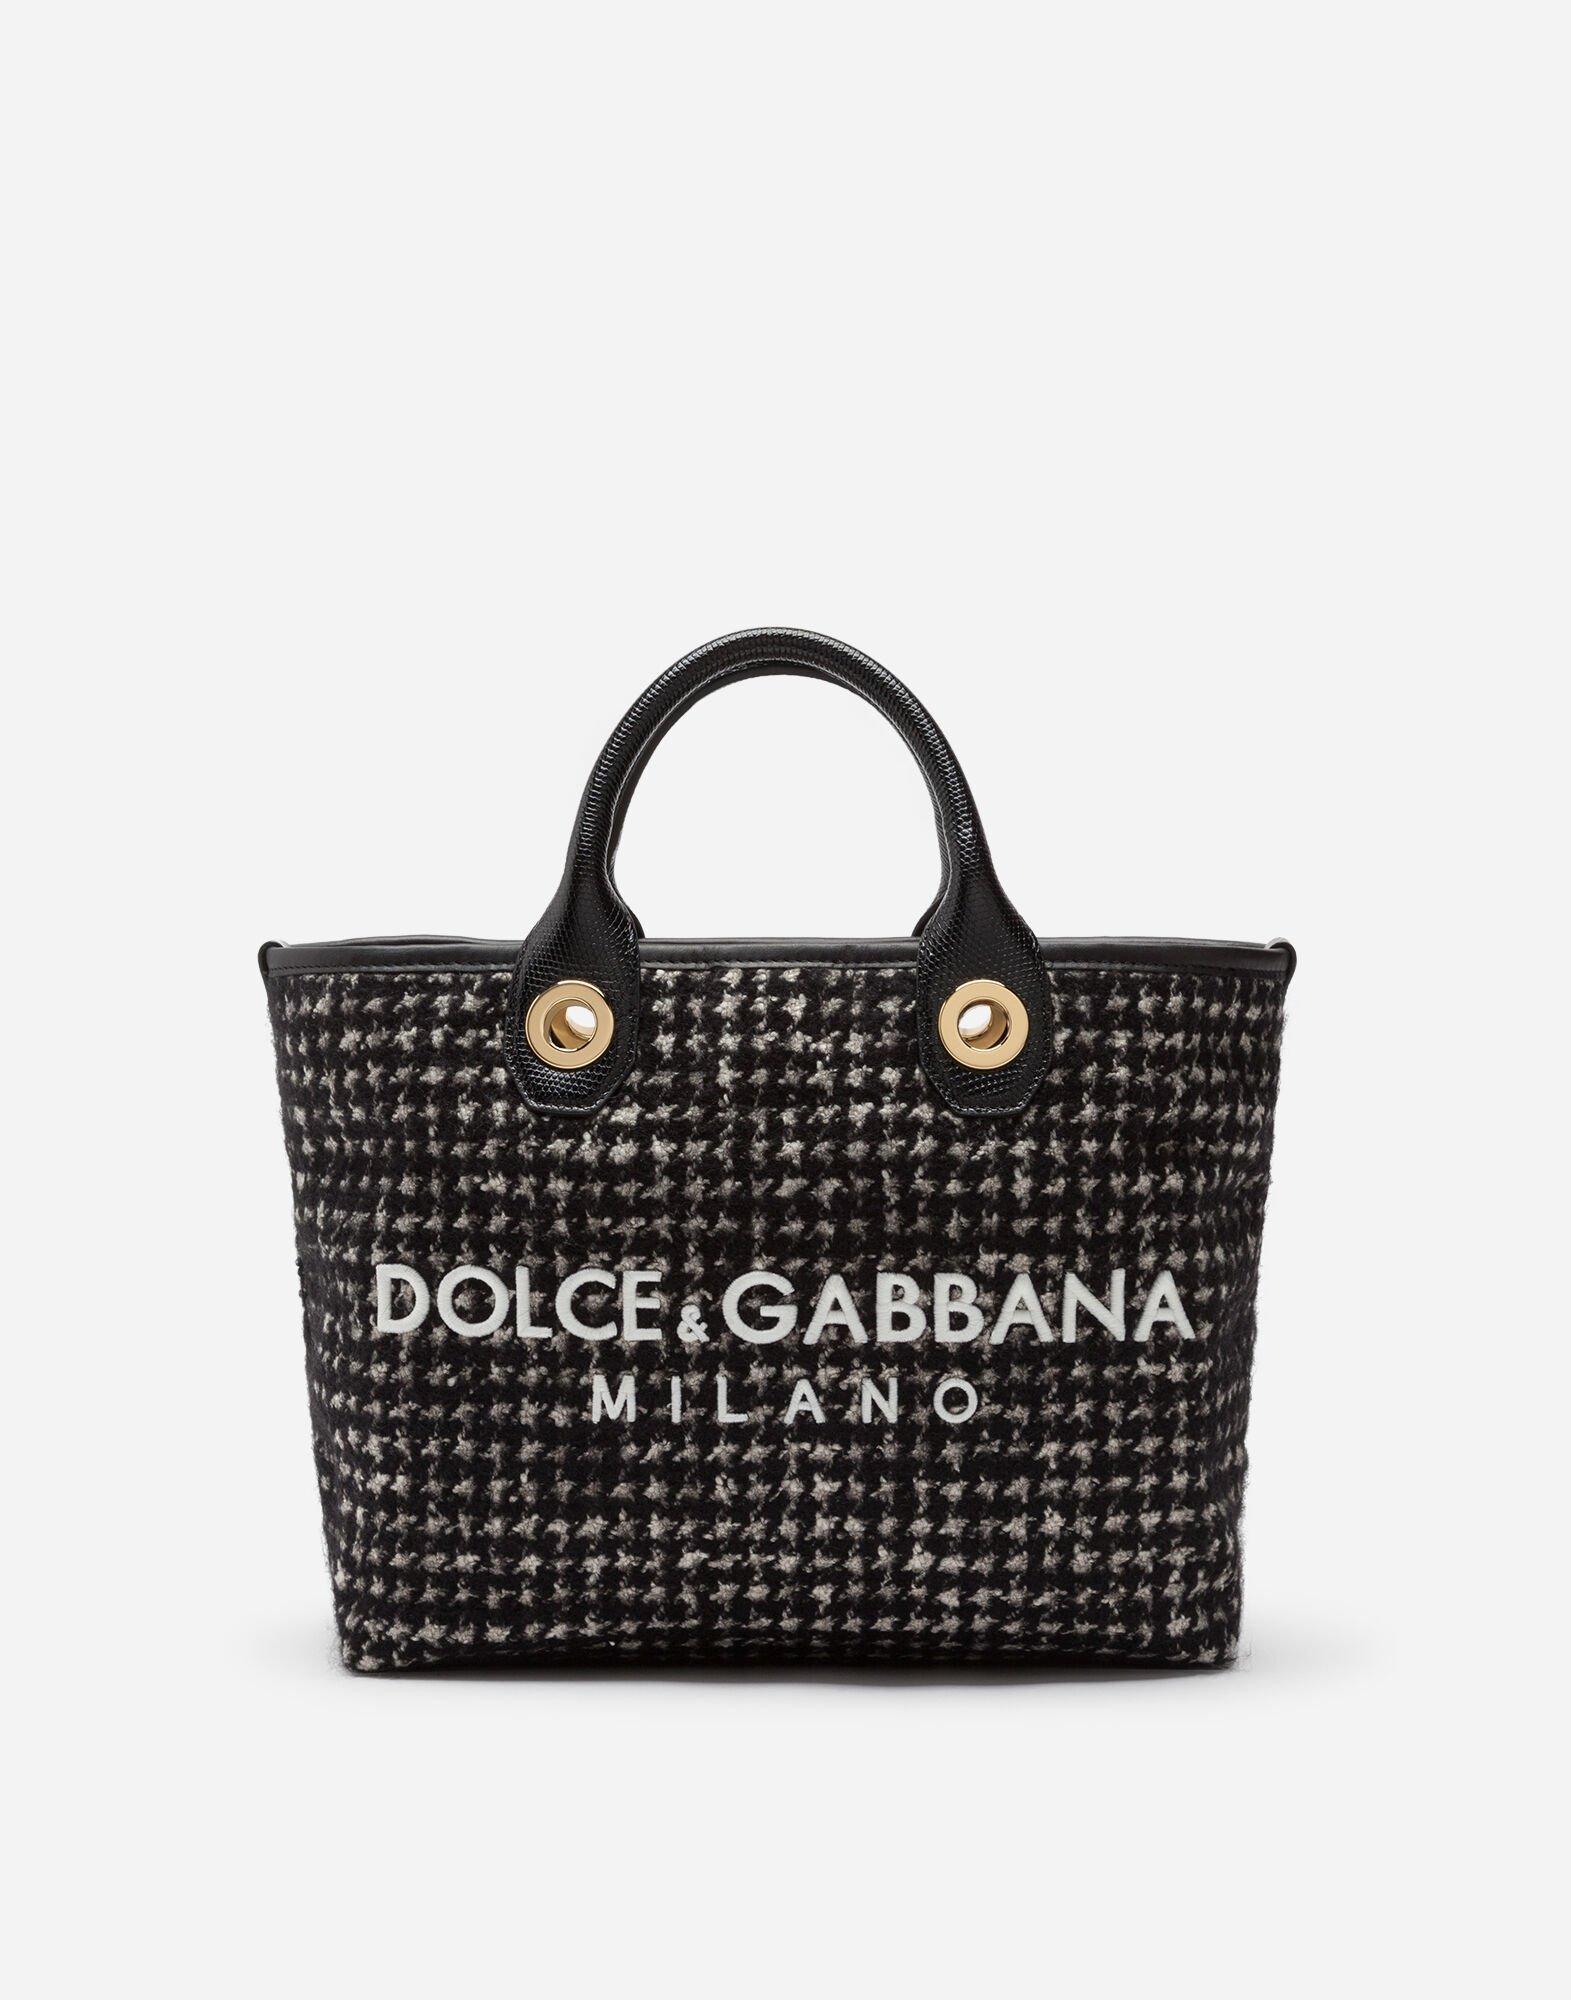 Dolce & Gabbana Leder Verzierte Handtasche in Mettallic Damen Taschen Taschen mit Griff 